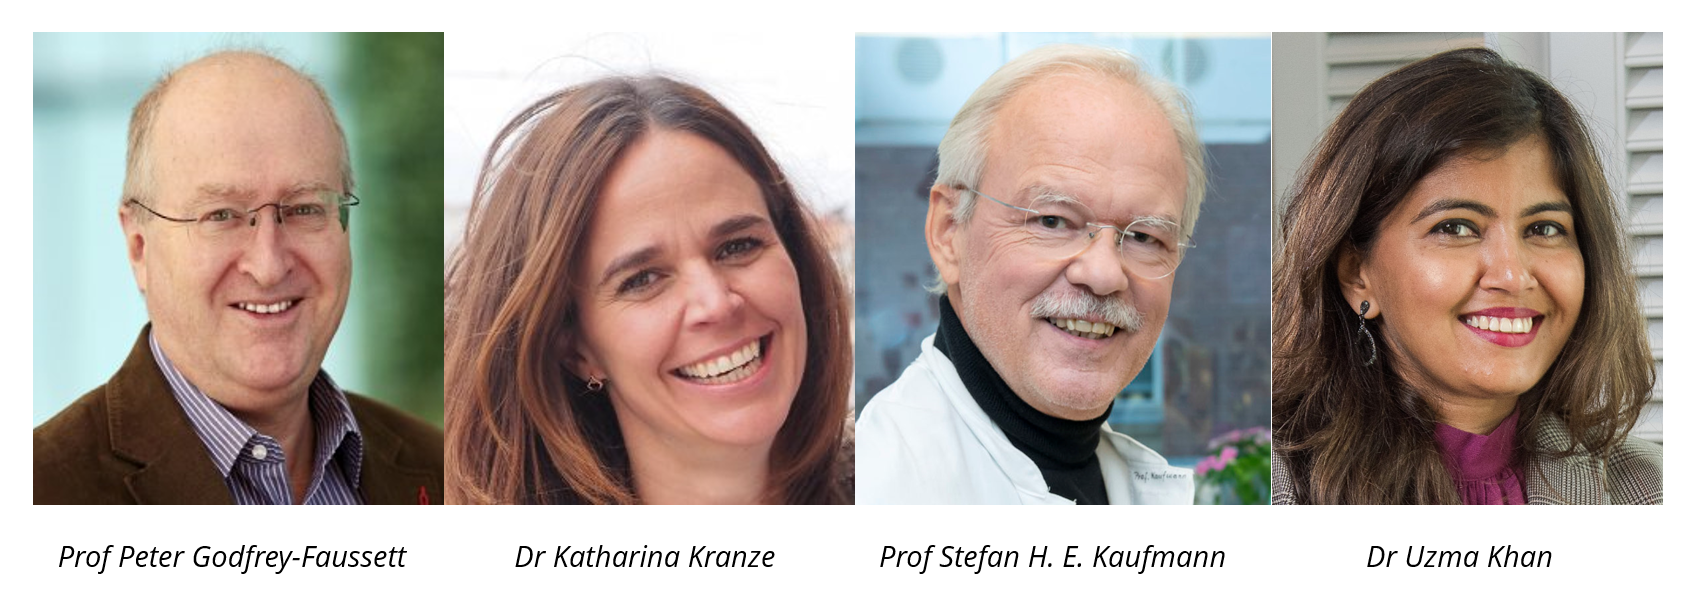 Prof Peter Godfrey-Faussett, Dr Katharina Kranze, Prof Stefan H. E. Kaufmann and Dr Uzma Khan